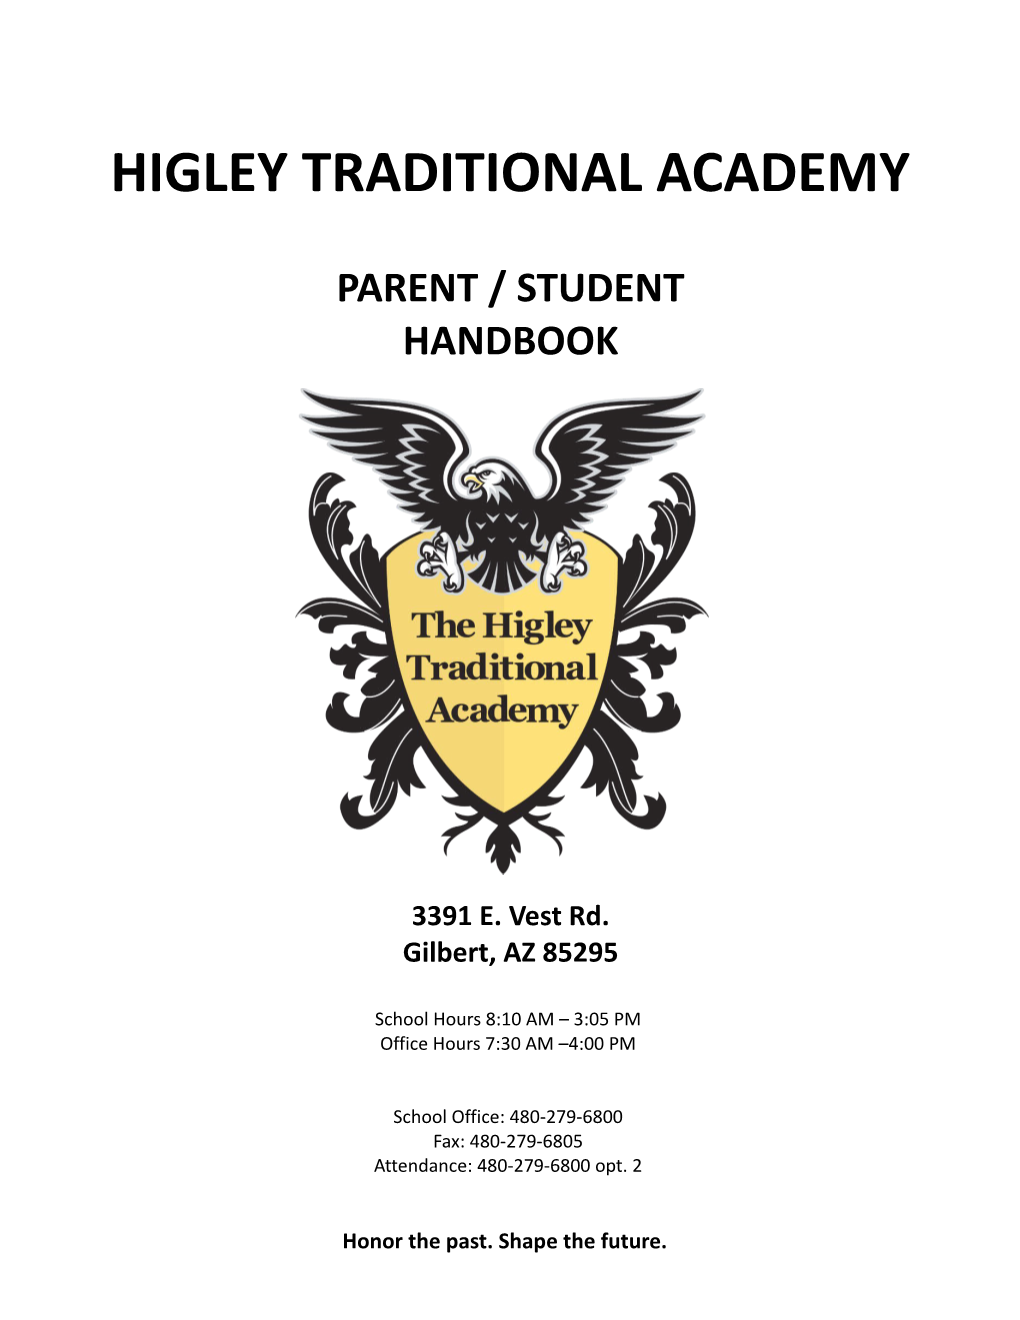 Higley Traditional Academy